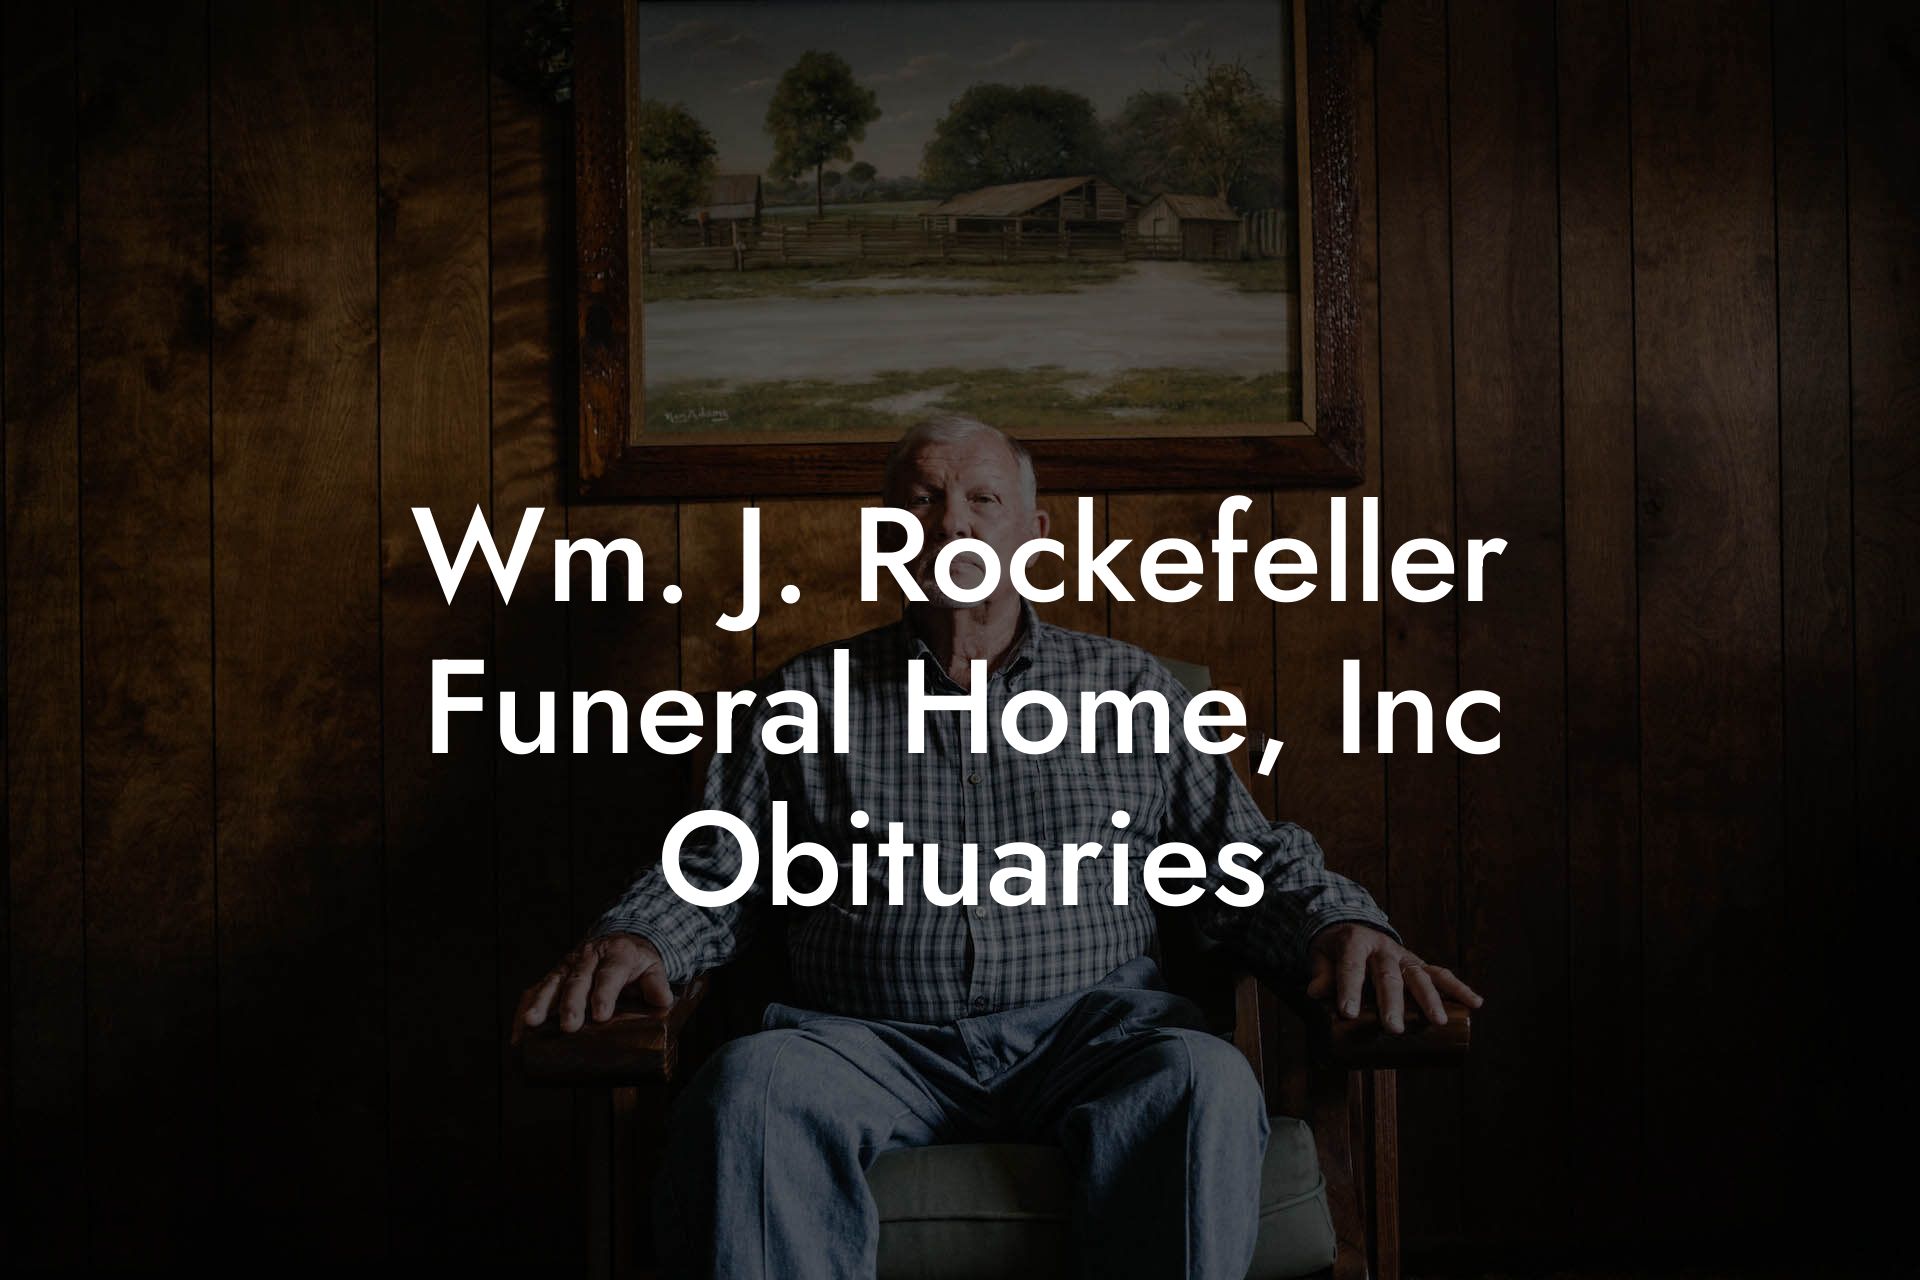 Wm. J. Rockefeller Funeral Home, Inc Obituaries